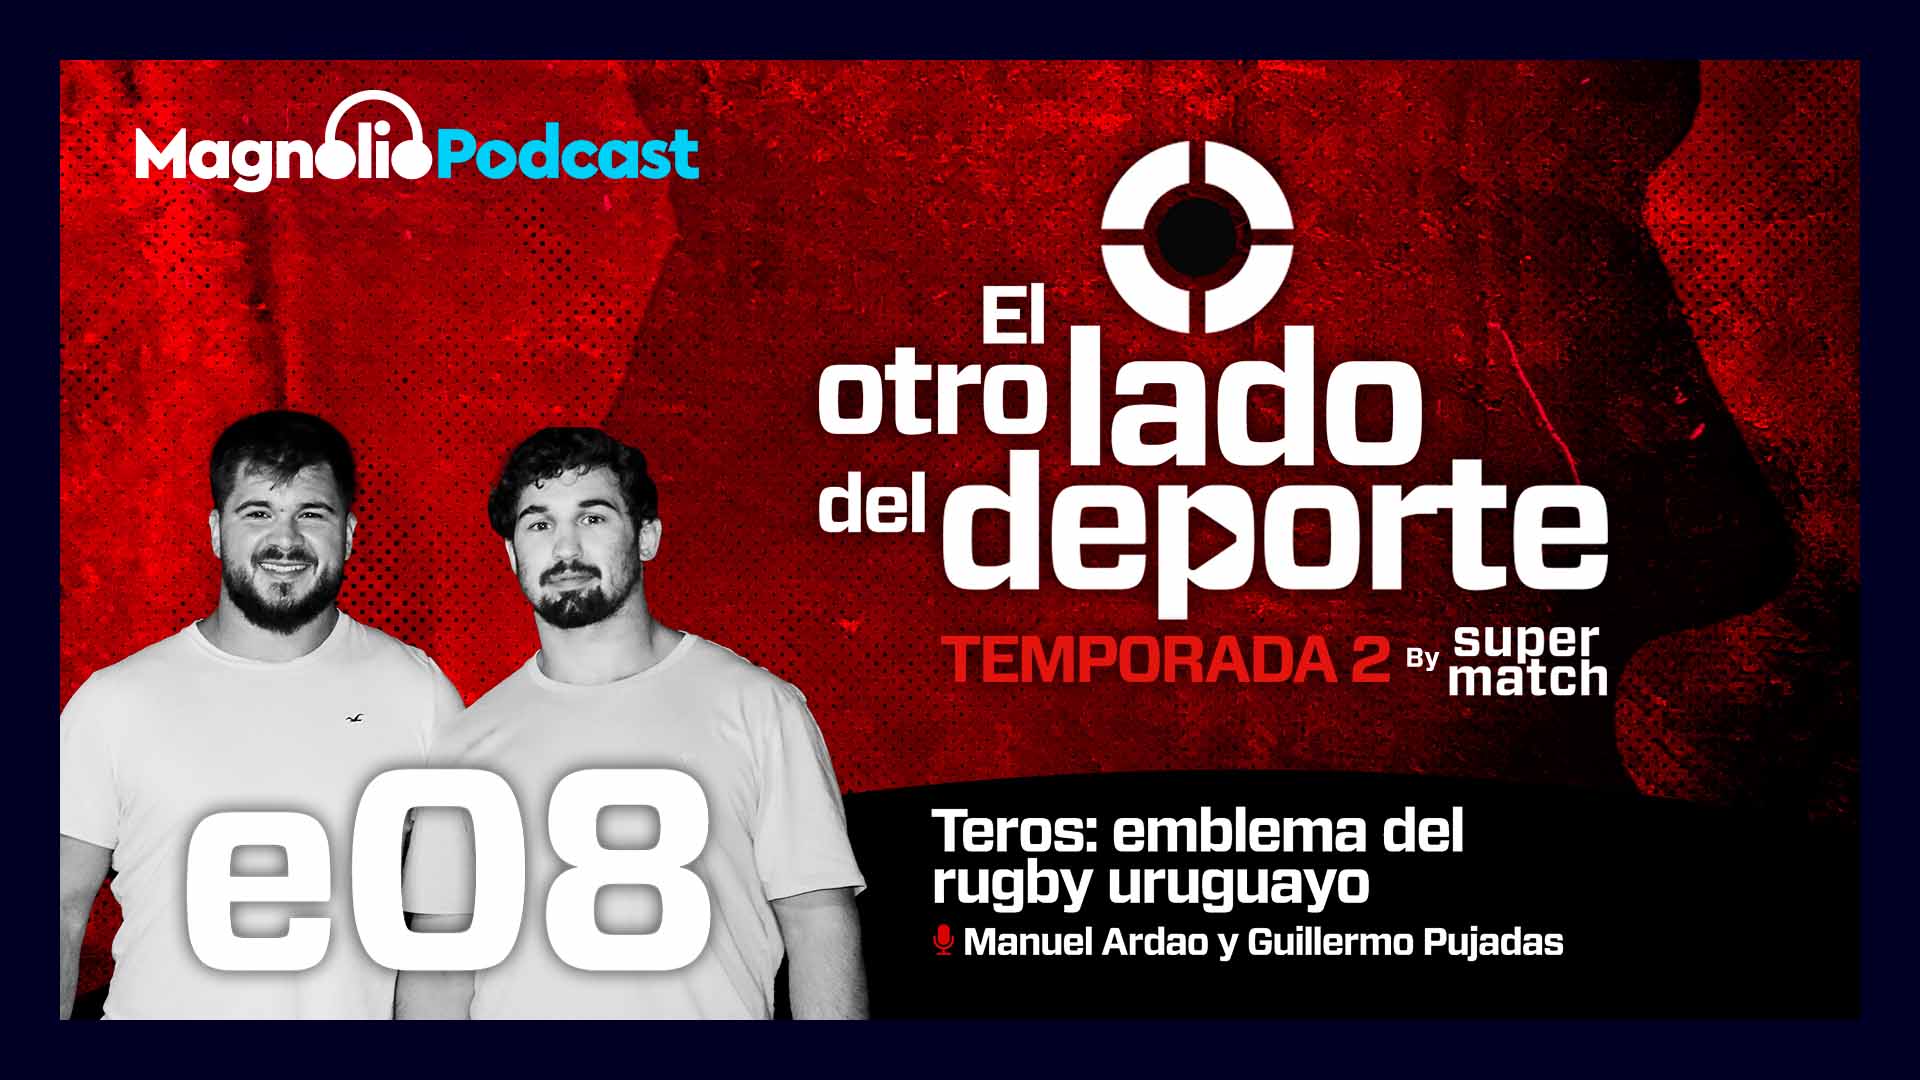 Teros: emblema del rugby uruguayo - Manuel Ardao y Guillermo Pujadas